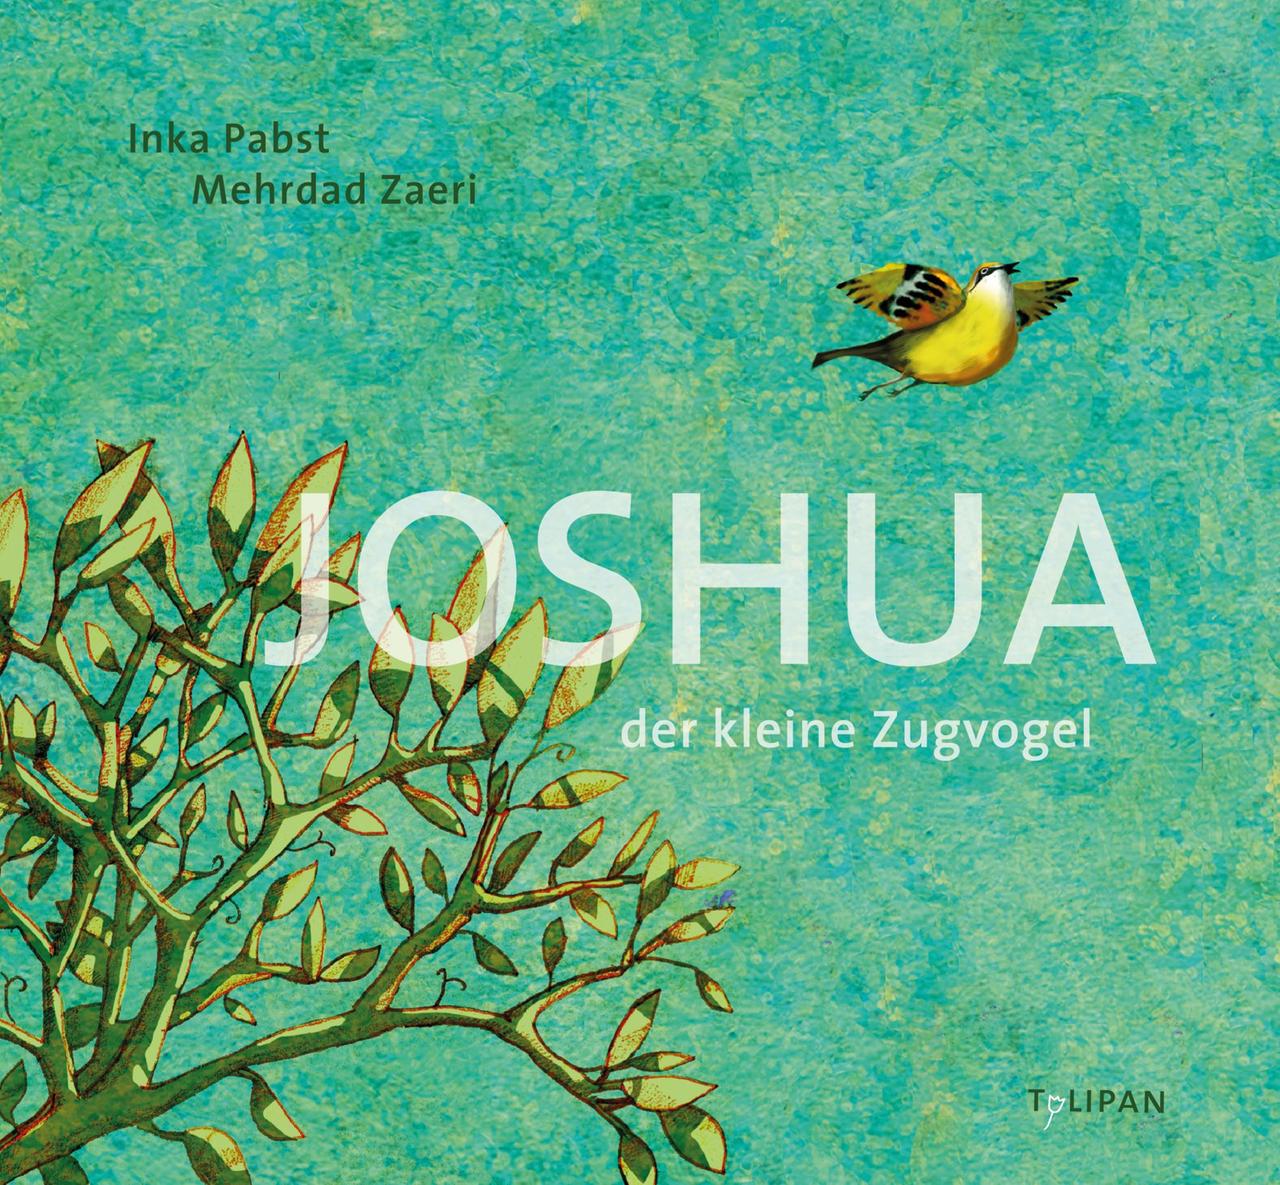 Joshua - der kleine Zugvogel